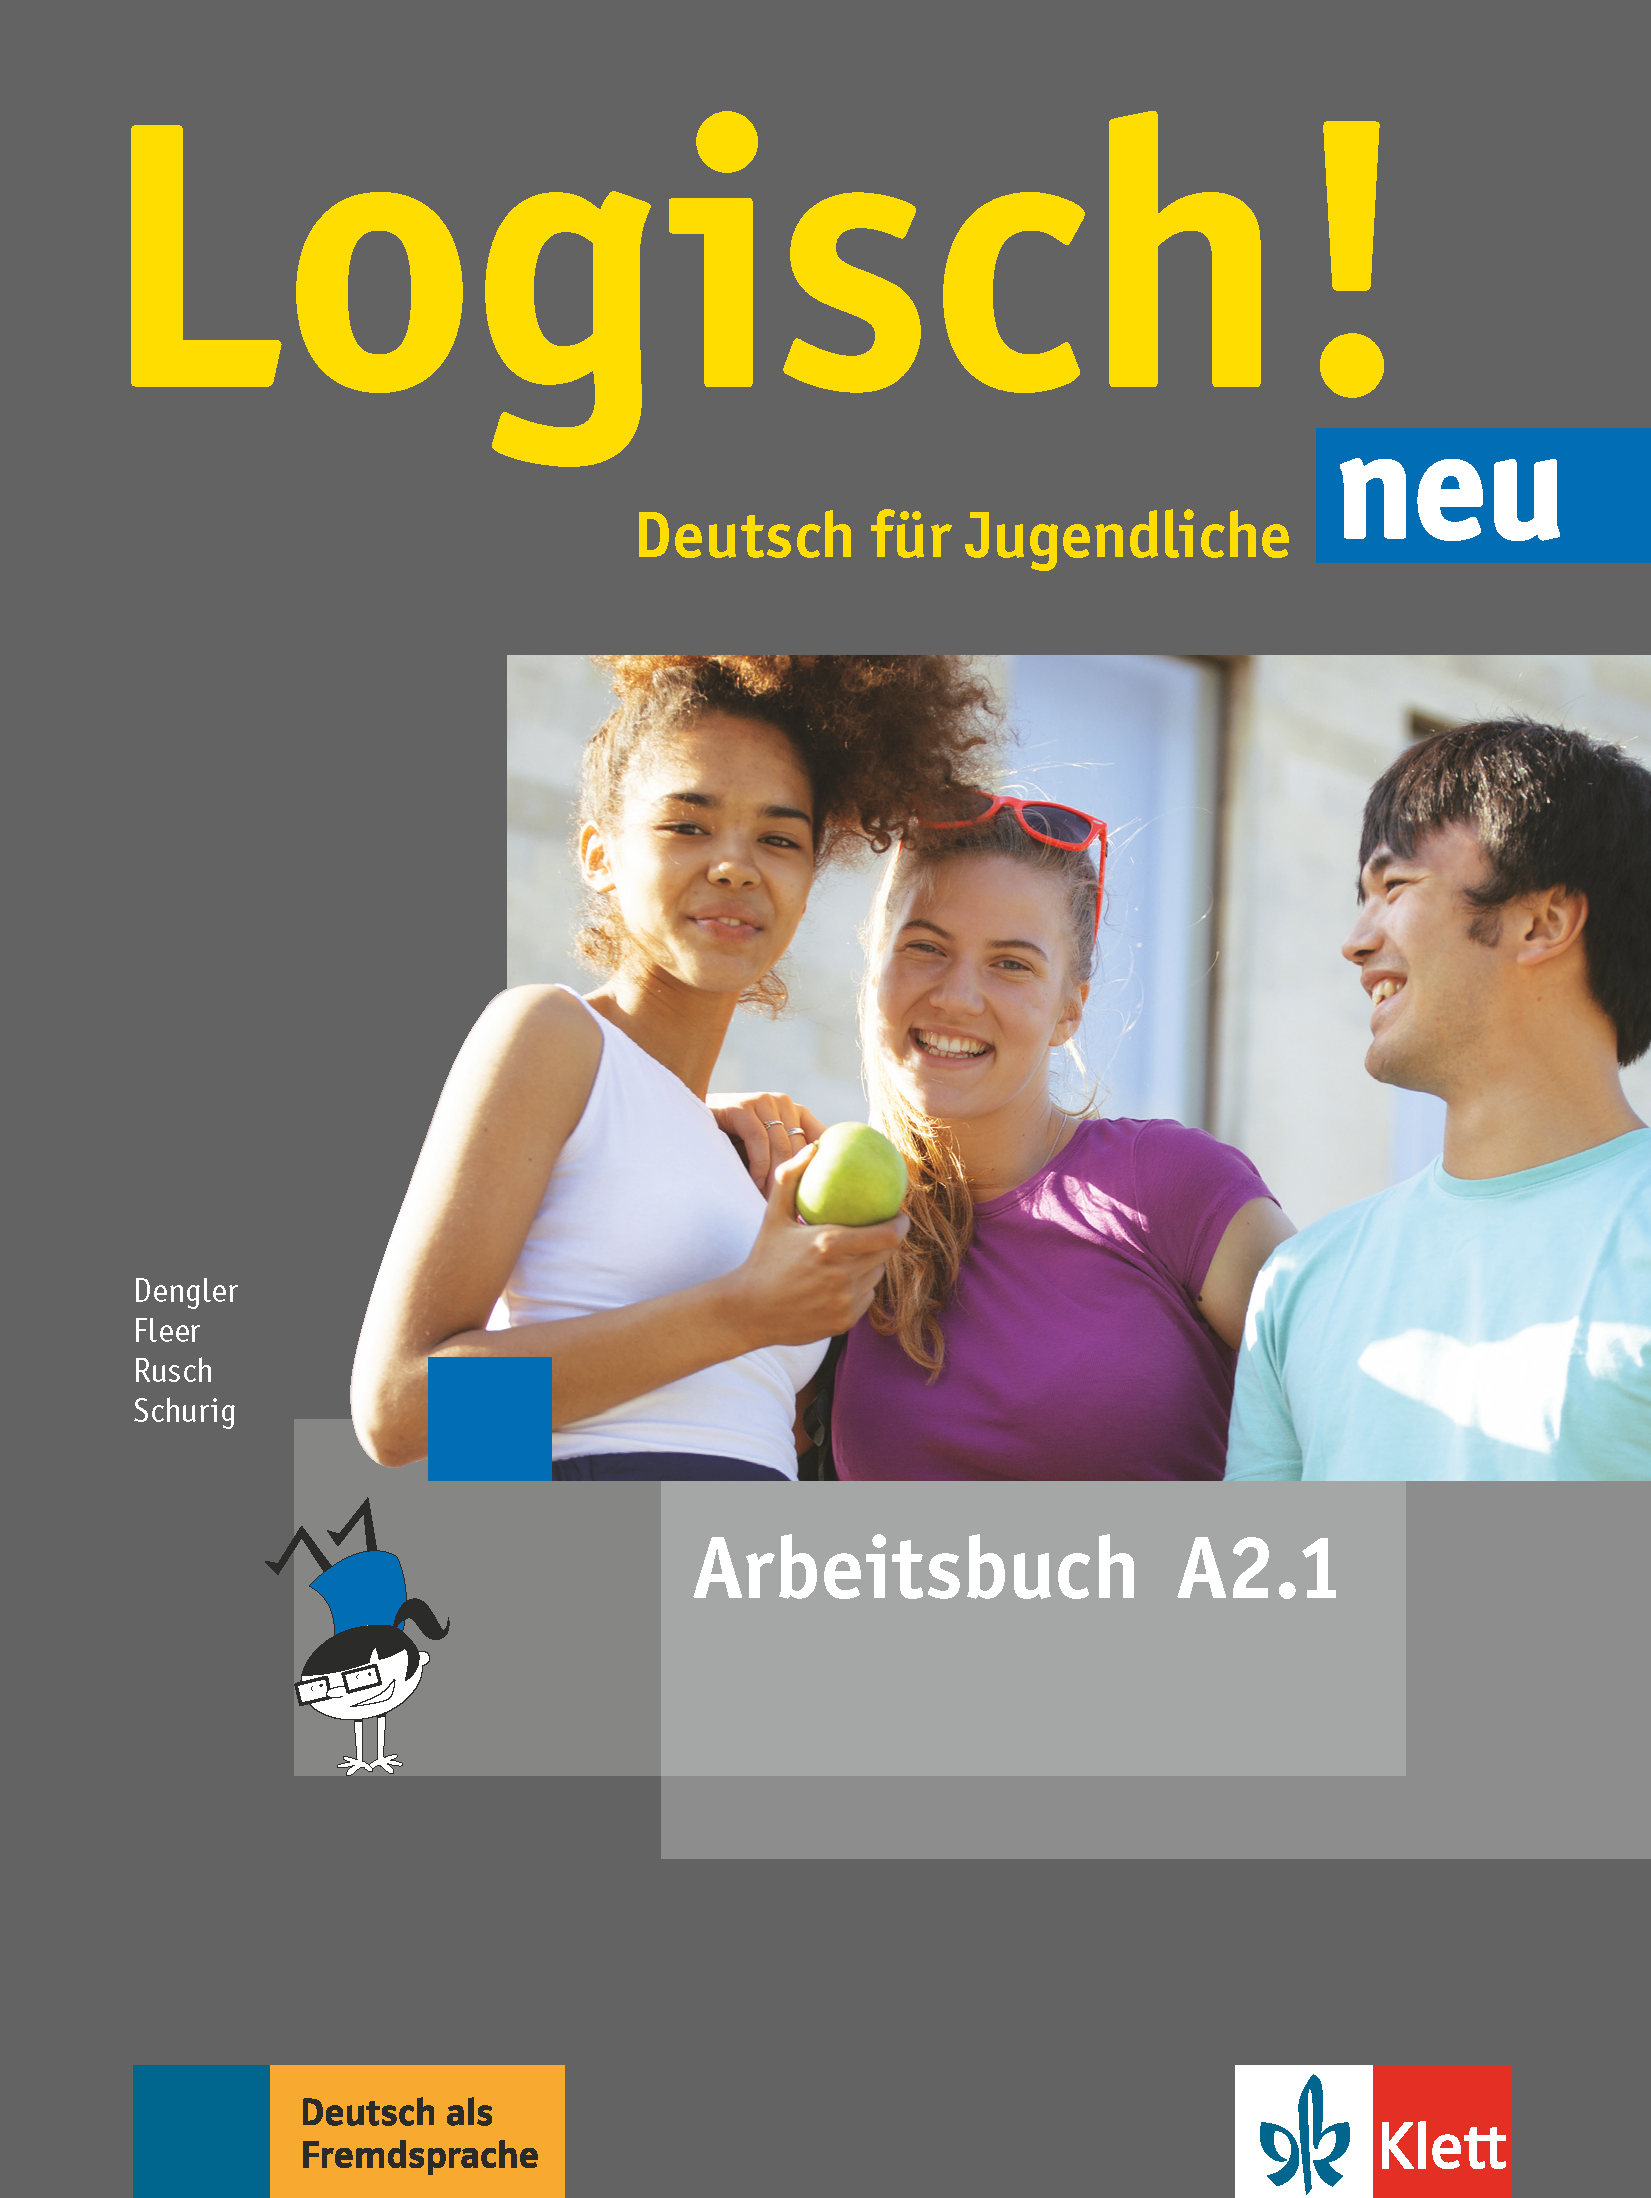 Logisch! Neu A2.1 interaktives Arbeitsbuch